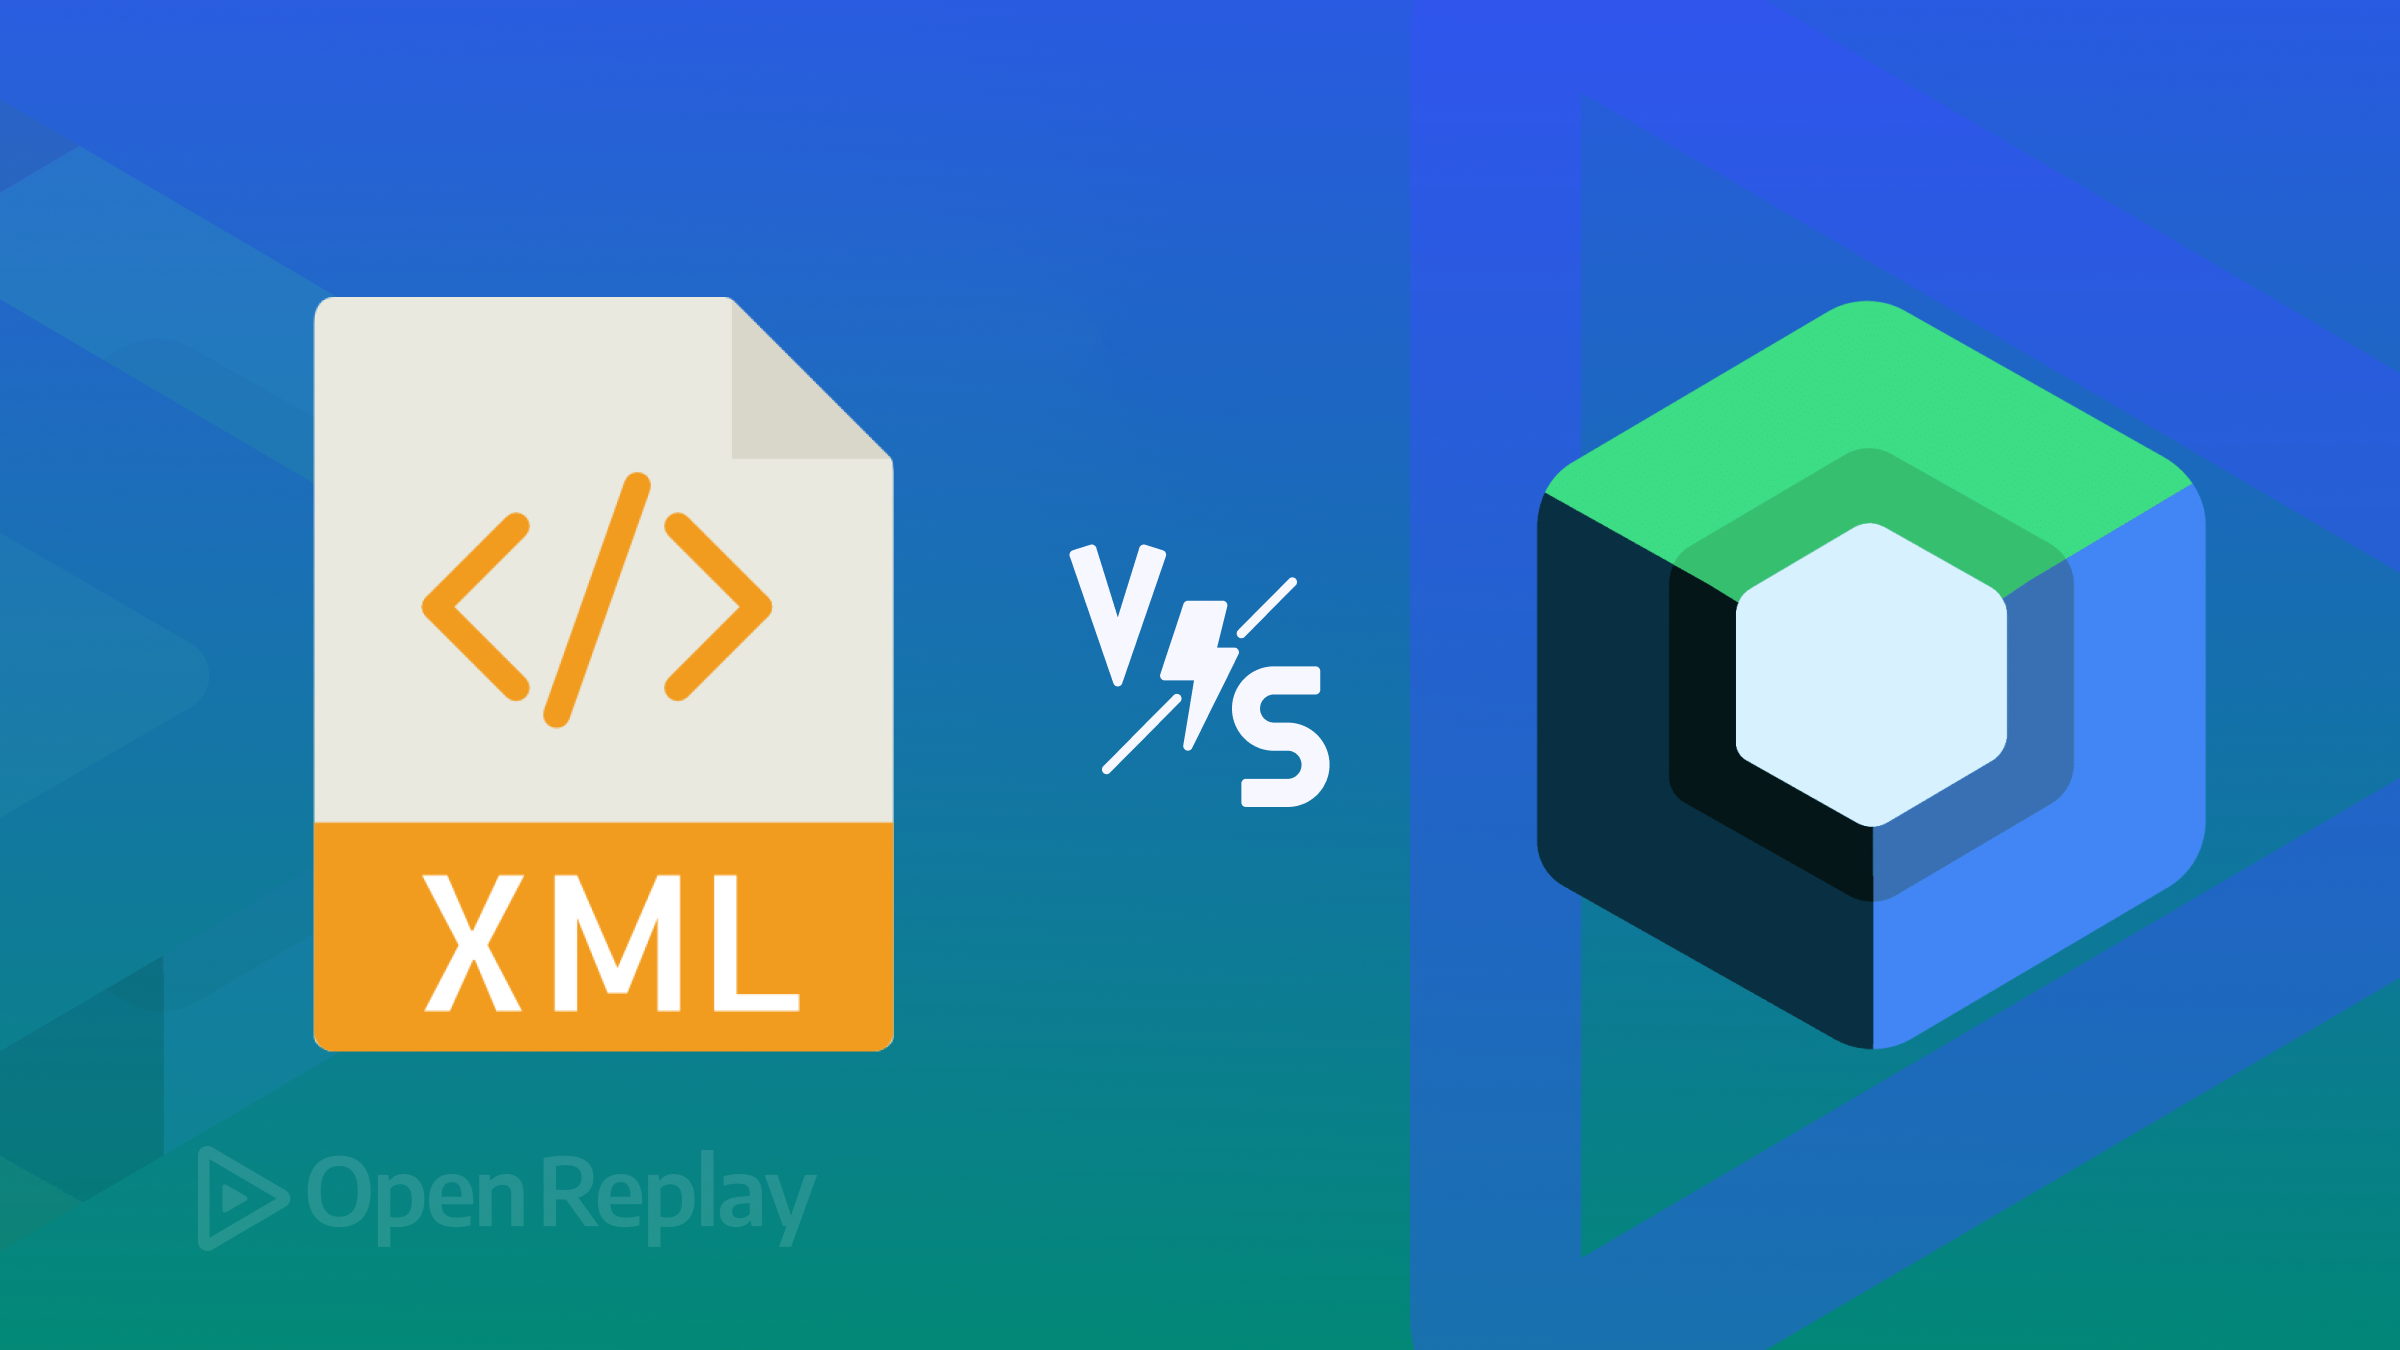 XML vs. Jetpack Compose: A Comparison